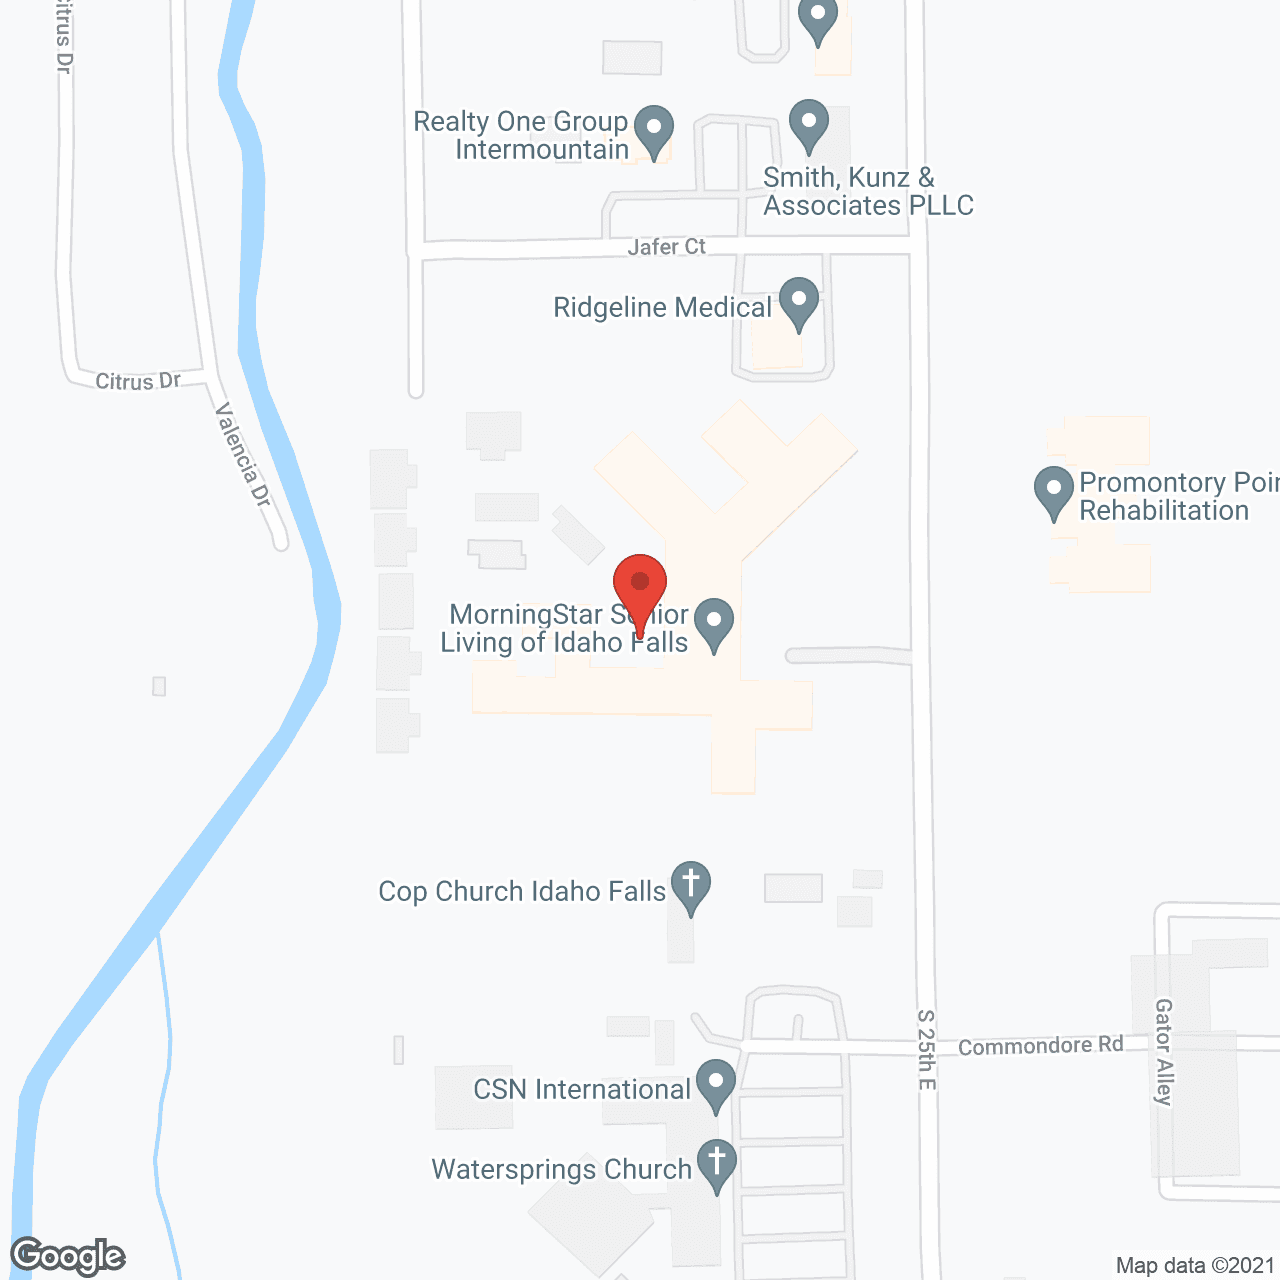 MorningStar of Idaho Falls in google map